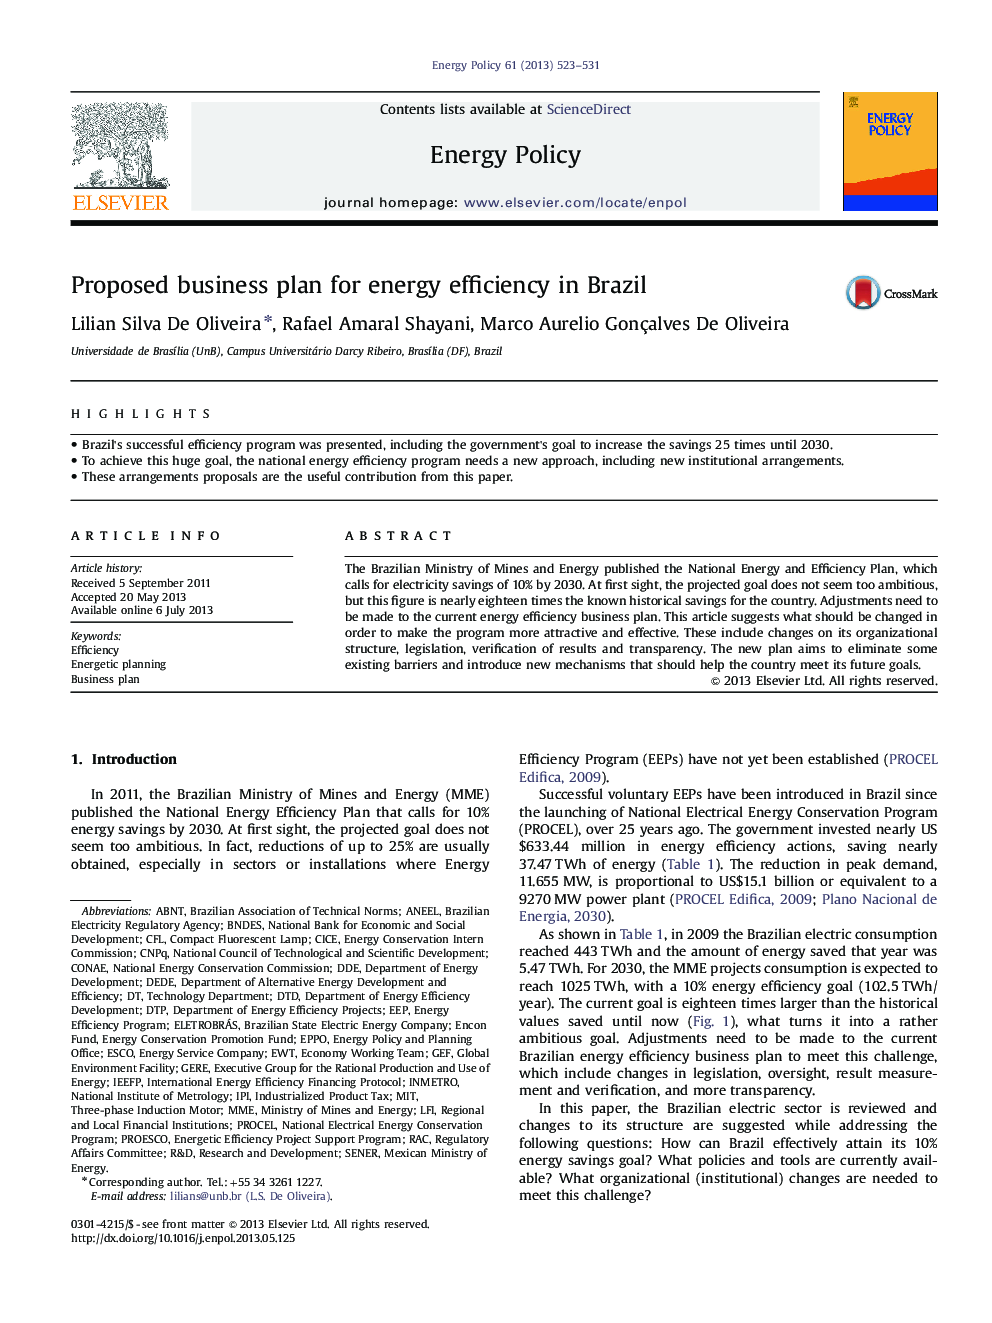 طرح تجاری پیشنهادی برای بهره وری انرژی در برزیل 